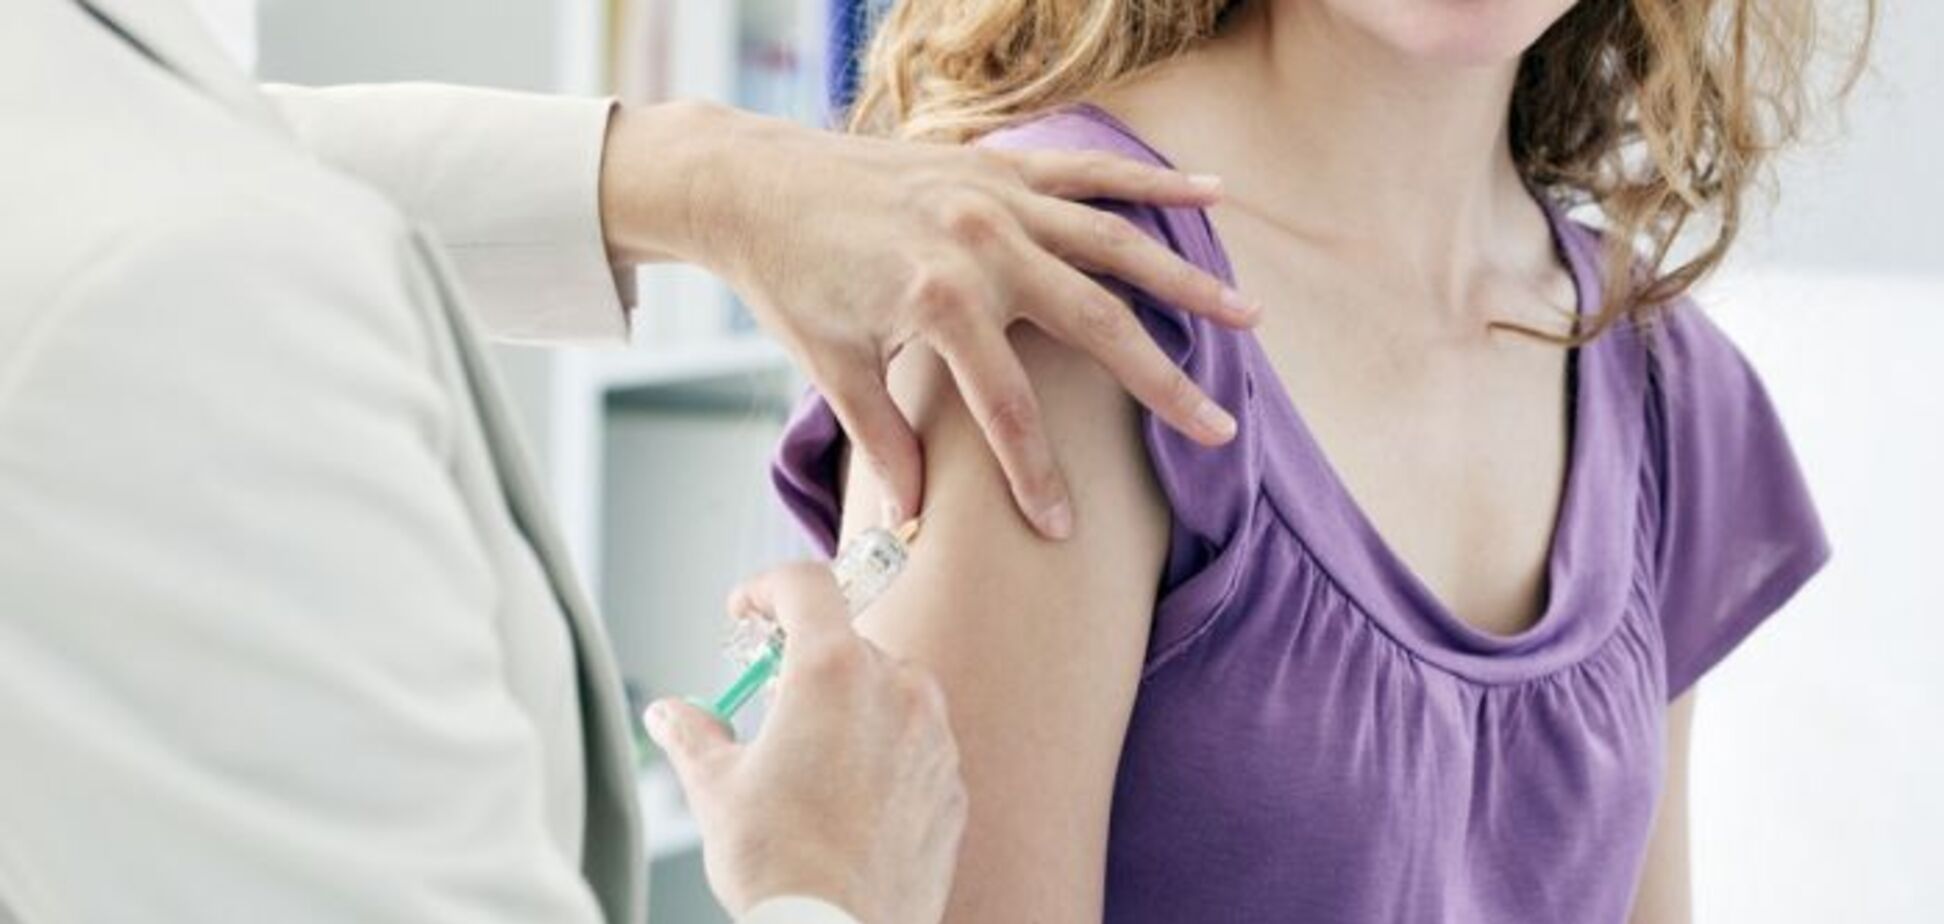 Вакцина от хламидиоза безопасна: первое испытание на добровольцах